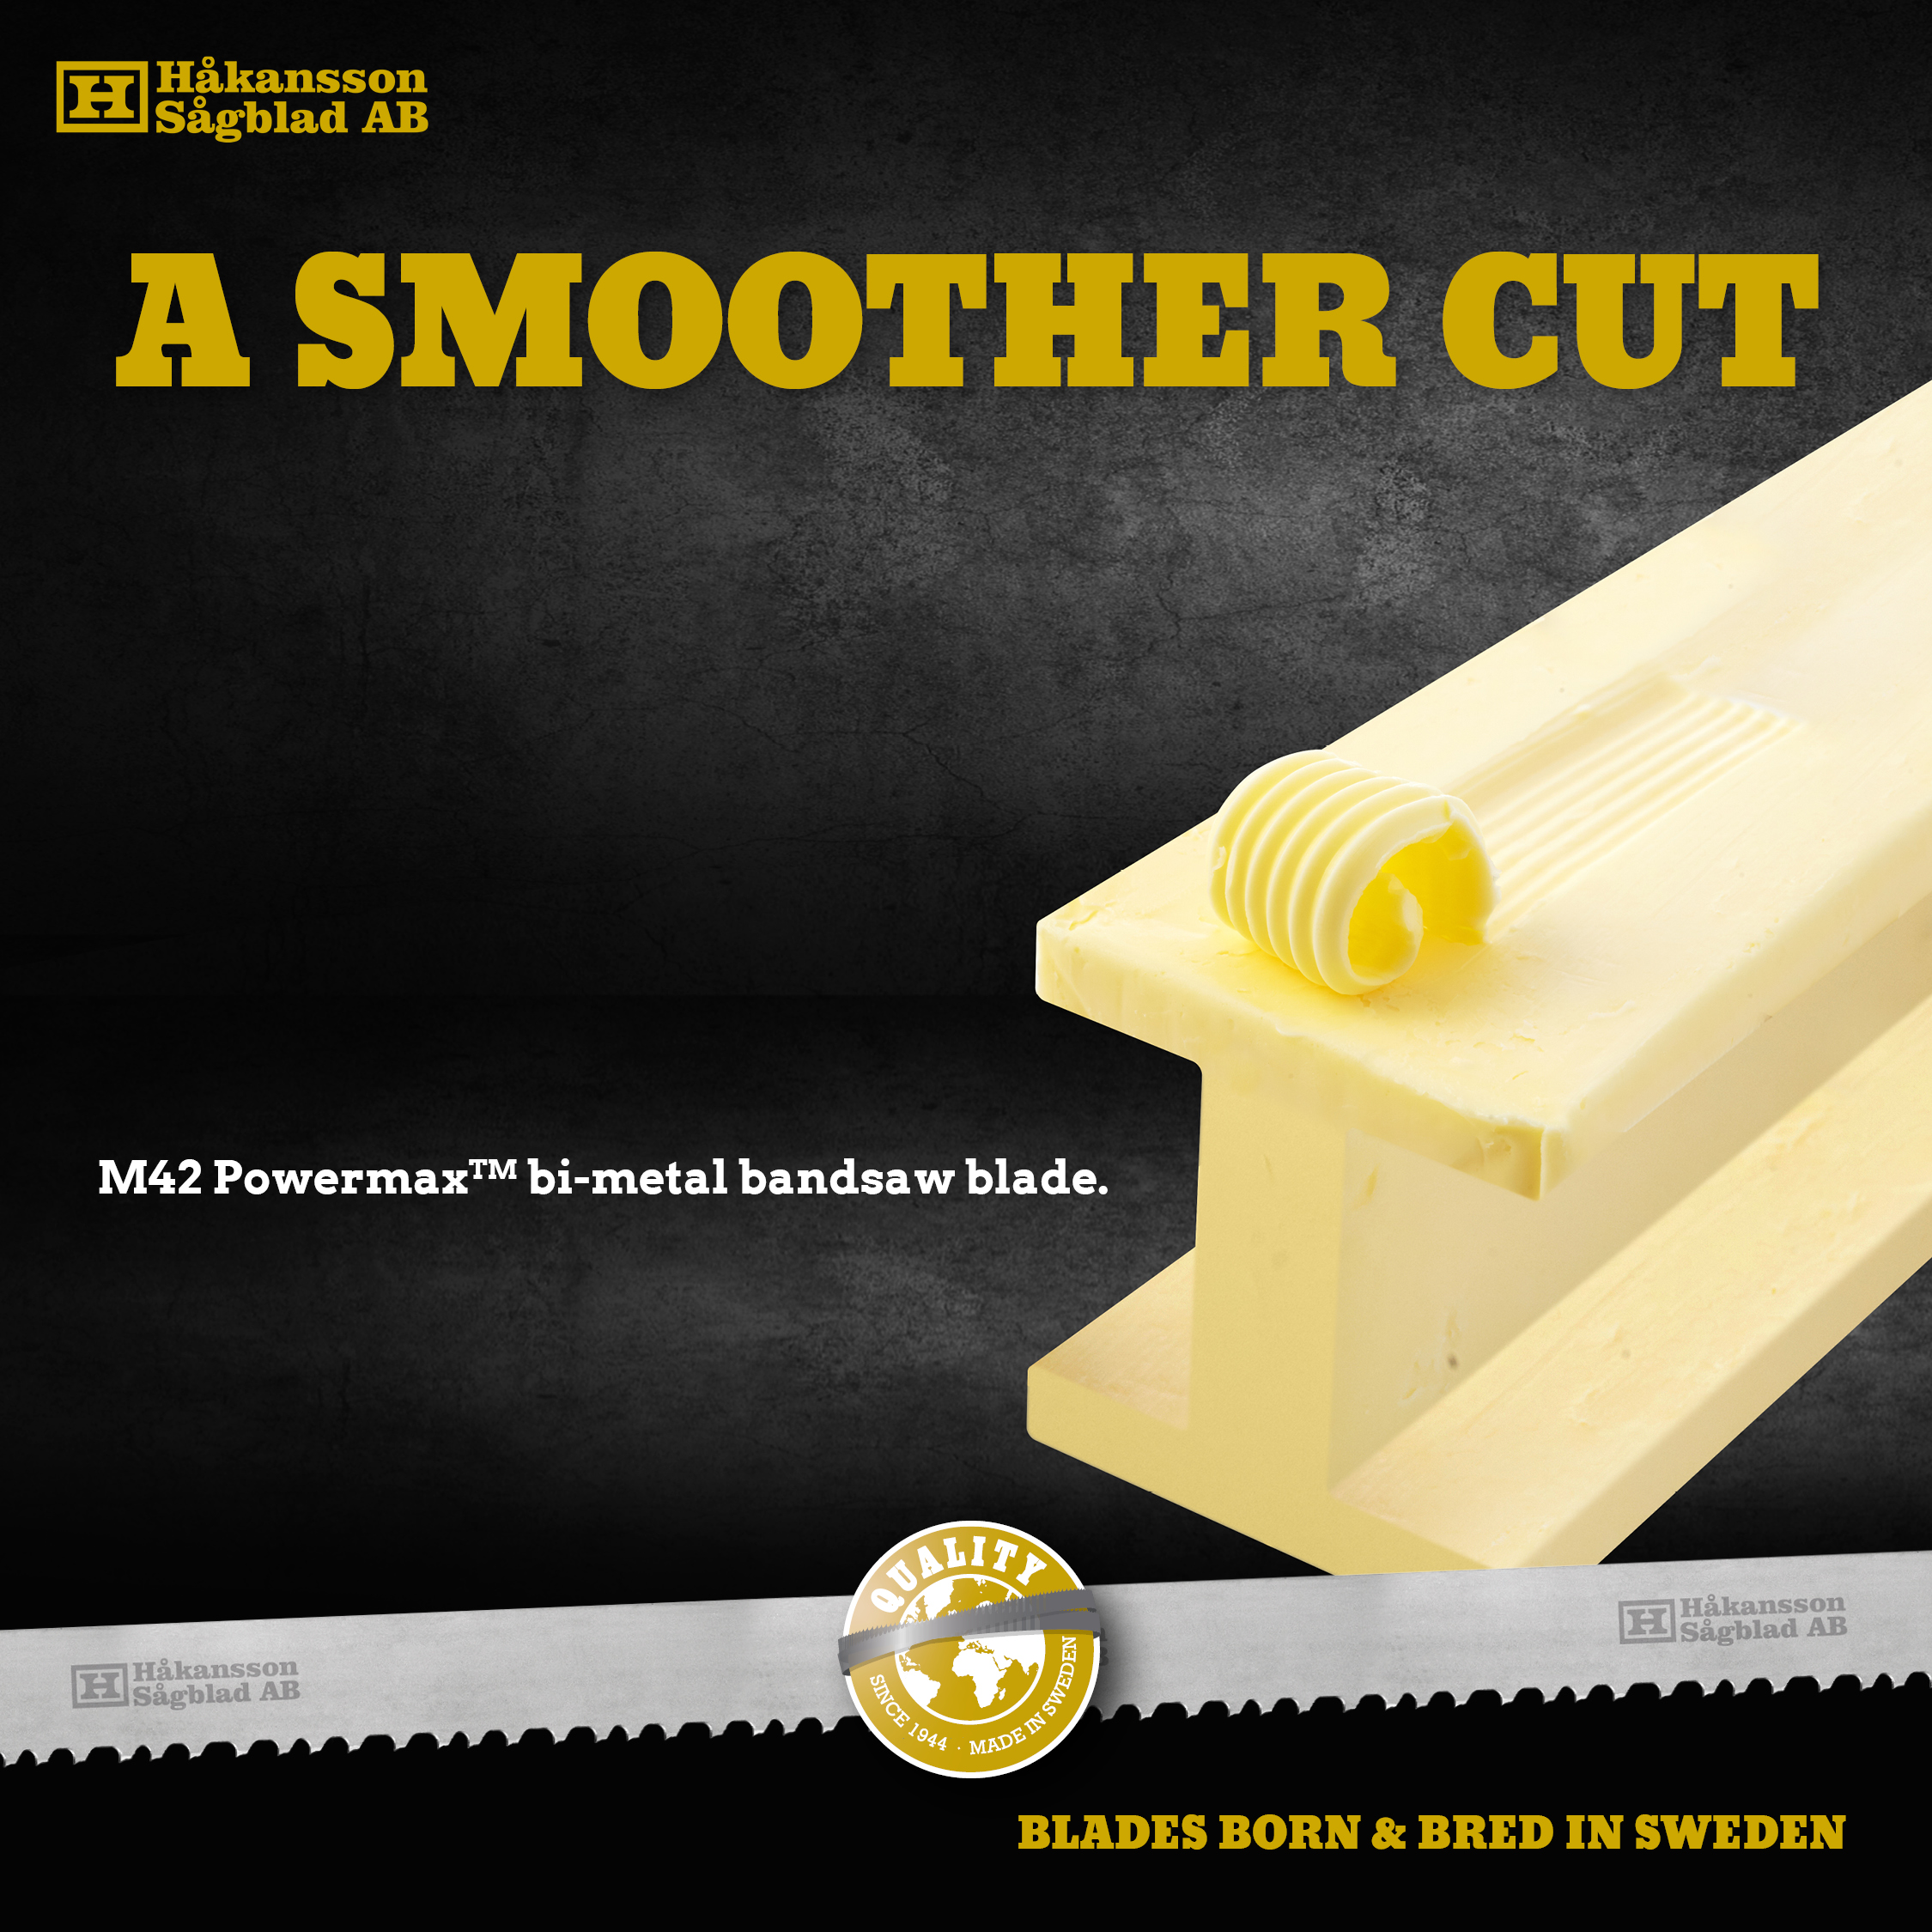 Advert A SMOOTH CUT, sawblade cutting through steel bar made of butter